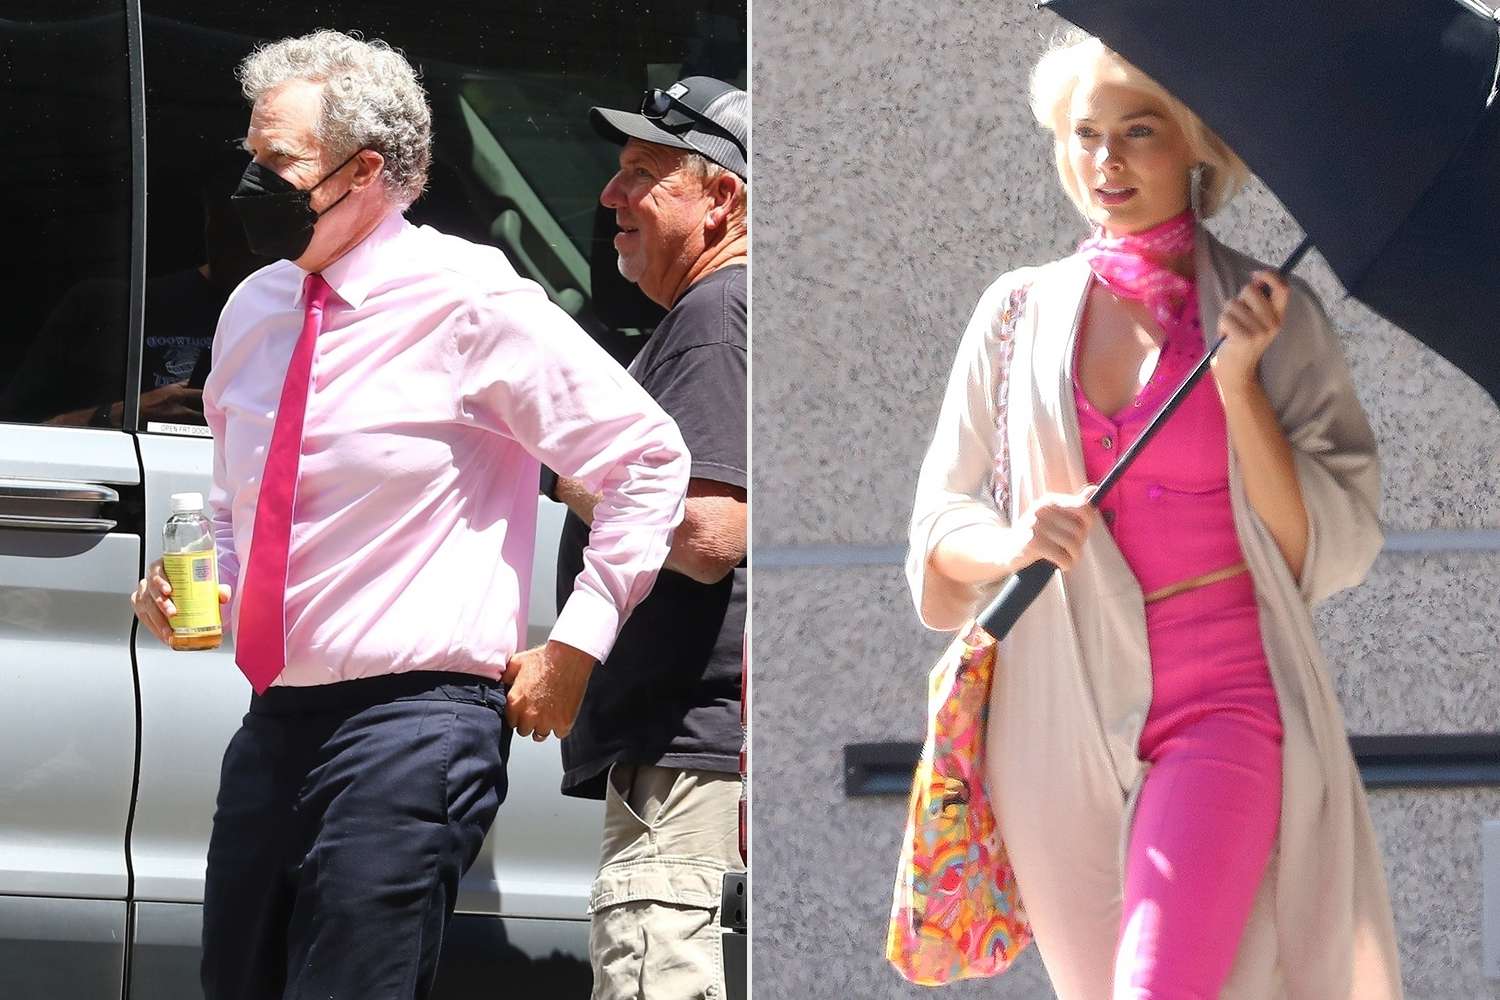 Los Angeles, CA - Will Ferrell llega al plató de la próxima película "Barbie"  rodaje de la película en Los Ángeles.  Vemos a Will vestido con una camisa rosa y corbata mientras se dirige al set de filmación.  Margot se esconde debajo de un paraguas negro, pero vislumbramos su atuendo rosa de Barbie.  En la foto: Will Ferrell BACKGRID EE.UU. 26 JUNIO 2022 EE.UU.: +1 310 798 9111 / usasales@backgrid.com Reino Unido: +44 208 344 2007 / uksales@backgrid.com *clientes del Reino Unido - Imágenes que contengan niños por favor pixelar la cara antes de la publicación*;  Los Angeles, CA - Margot Robbie hace su camino hacia el set de la próxima película de "Barbie"  película con el característico look rosa de Barbie.  En la foto: Margot Robbie BACKGRID USA 26 JUNIO 2022 USA: +1 310 798 9111 / usasales@backgrid.com UK: +44 208 344 2007 / uksales@backgrid.